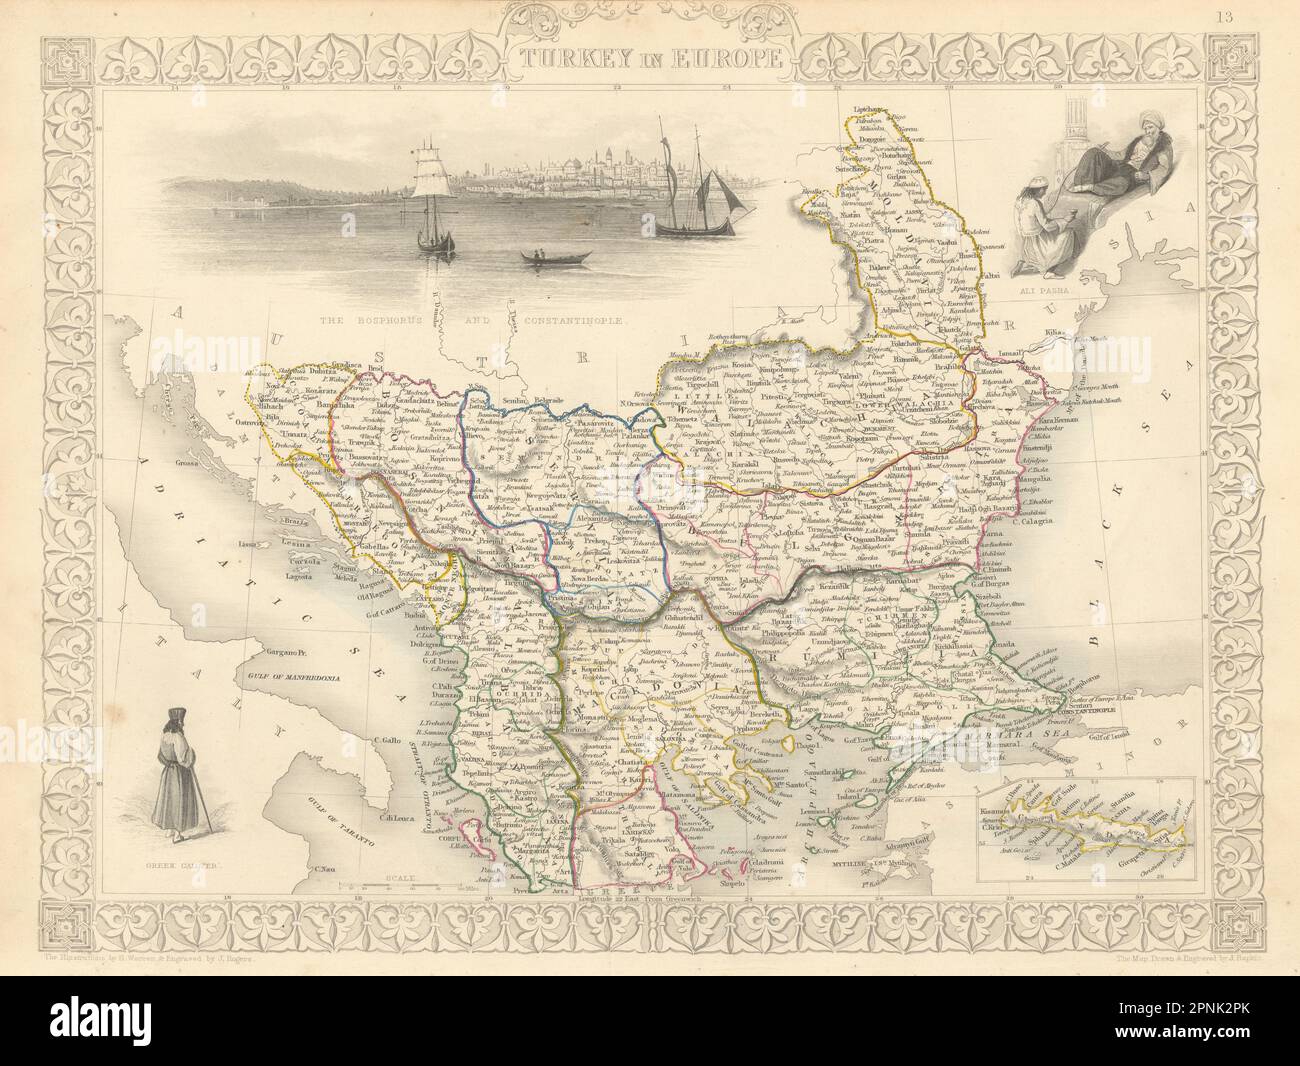 La TURCHIA IN EUROPA. Vista di Costantinopoli. Rumilia Balcani. TALLIS & RAPKIN 1851 mappa Foto Stock